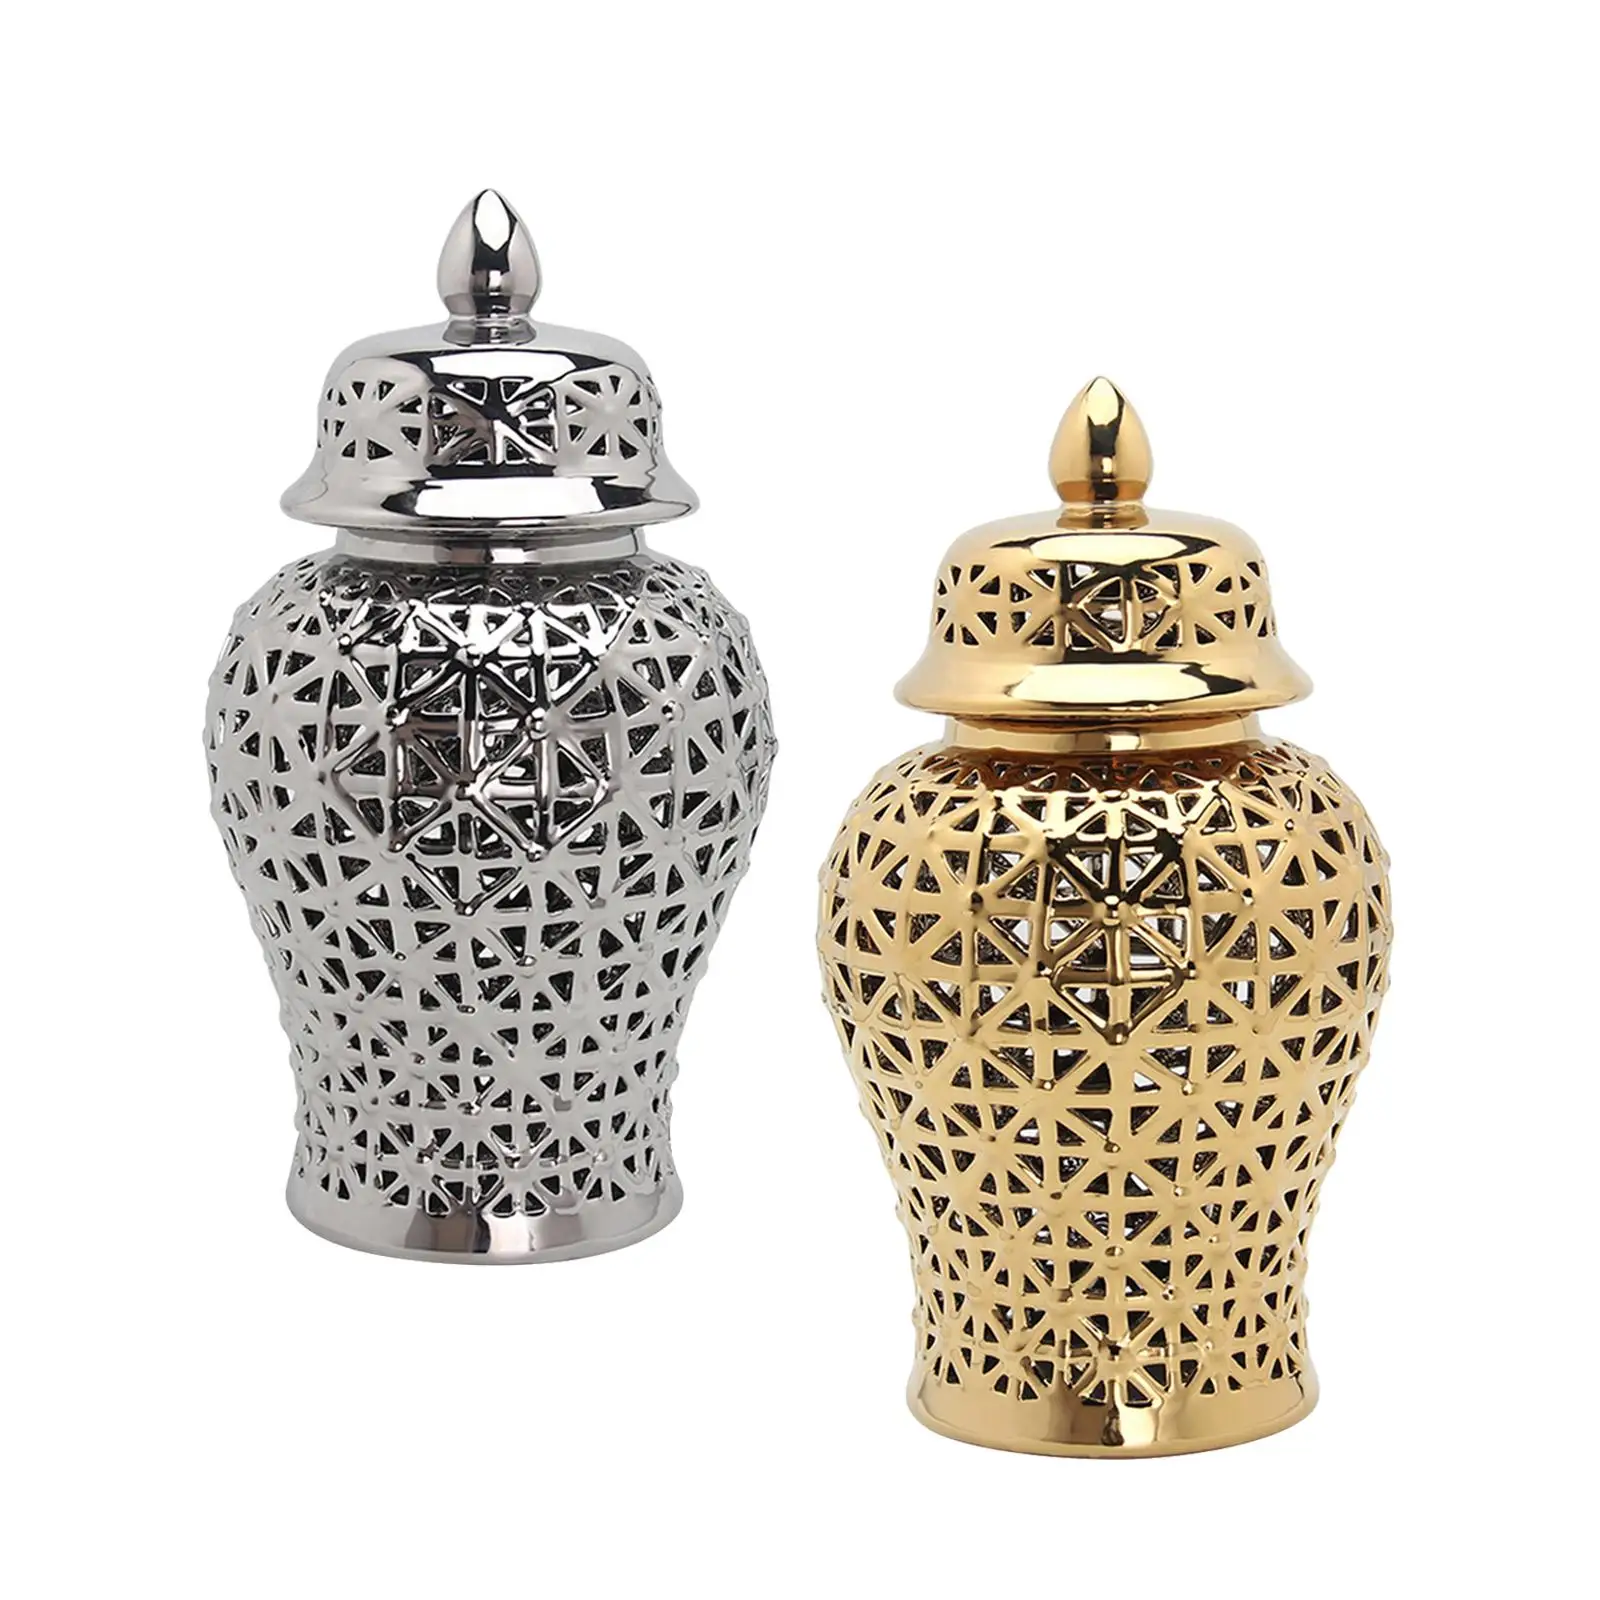 Ceramic Ginger Jar Decorative Porcelain Jar with Lid Handicraft for Bedroom